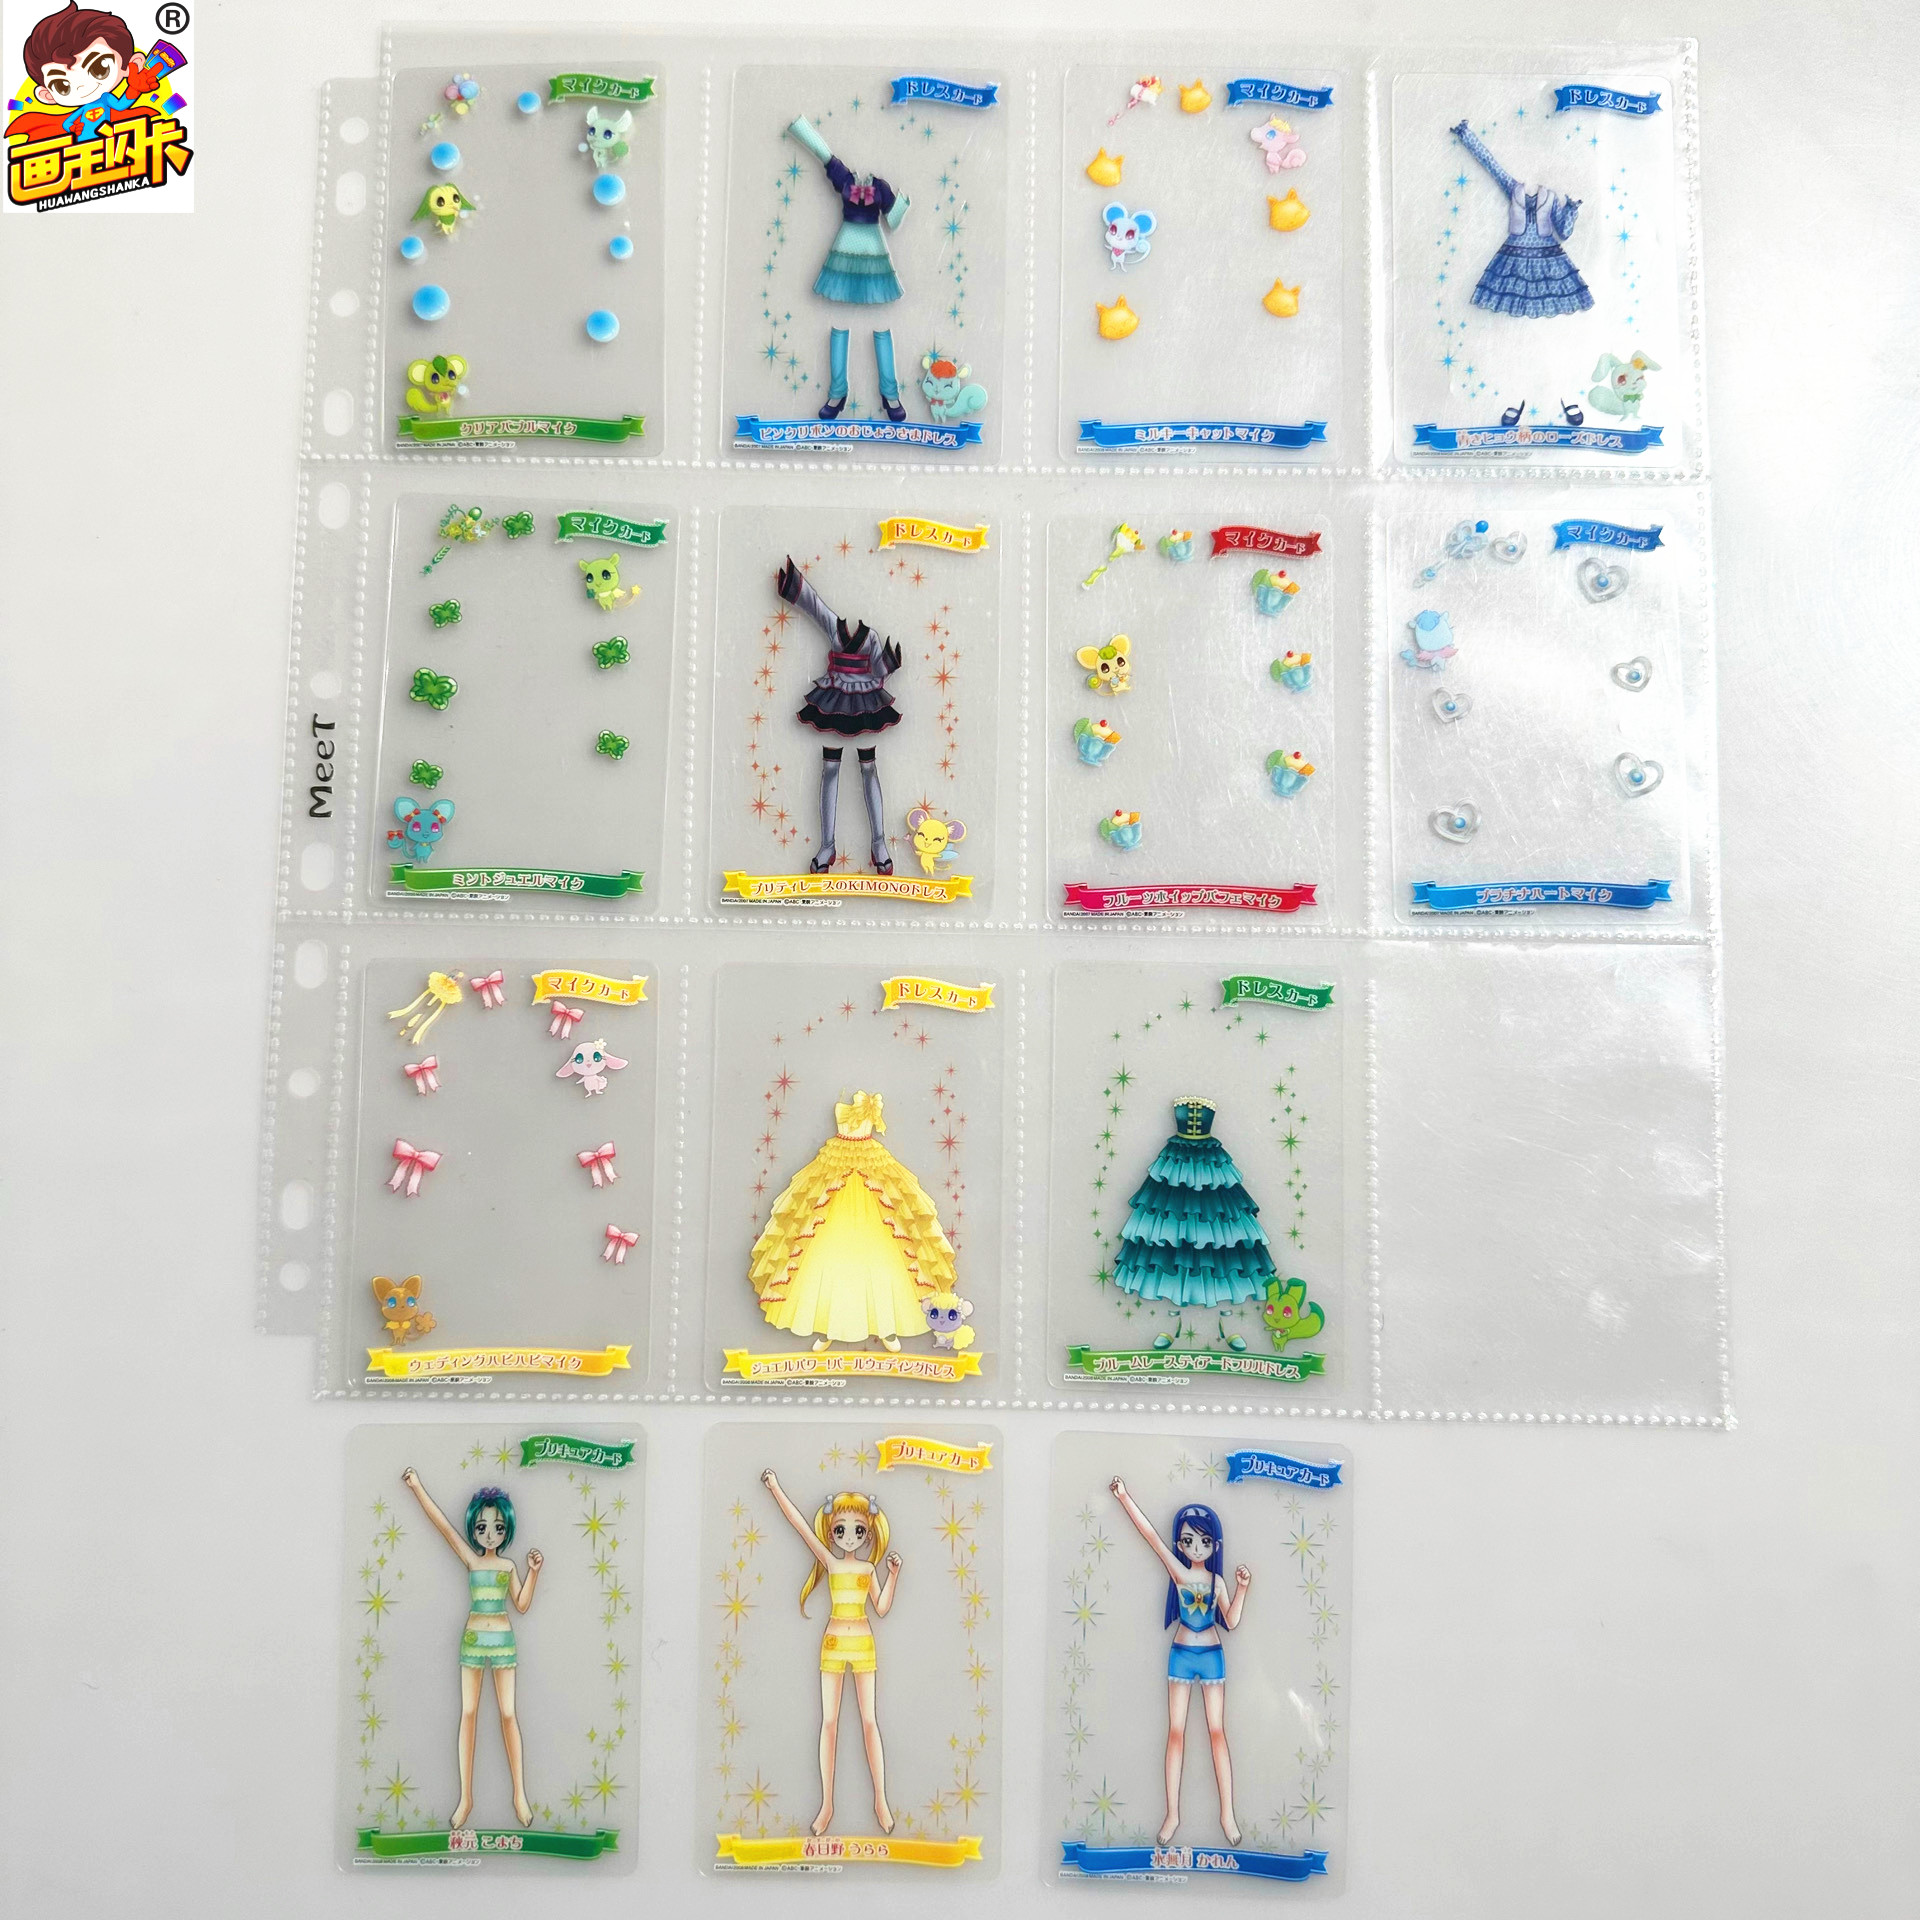 【画王】Yes! 光之美少女5 食玩卡 台机卡片 透明PVC胶卡套装搭配